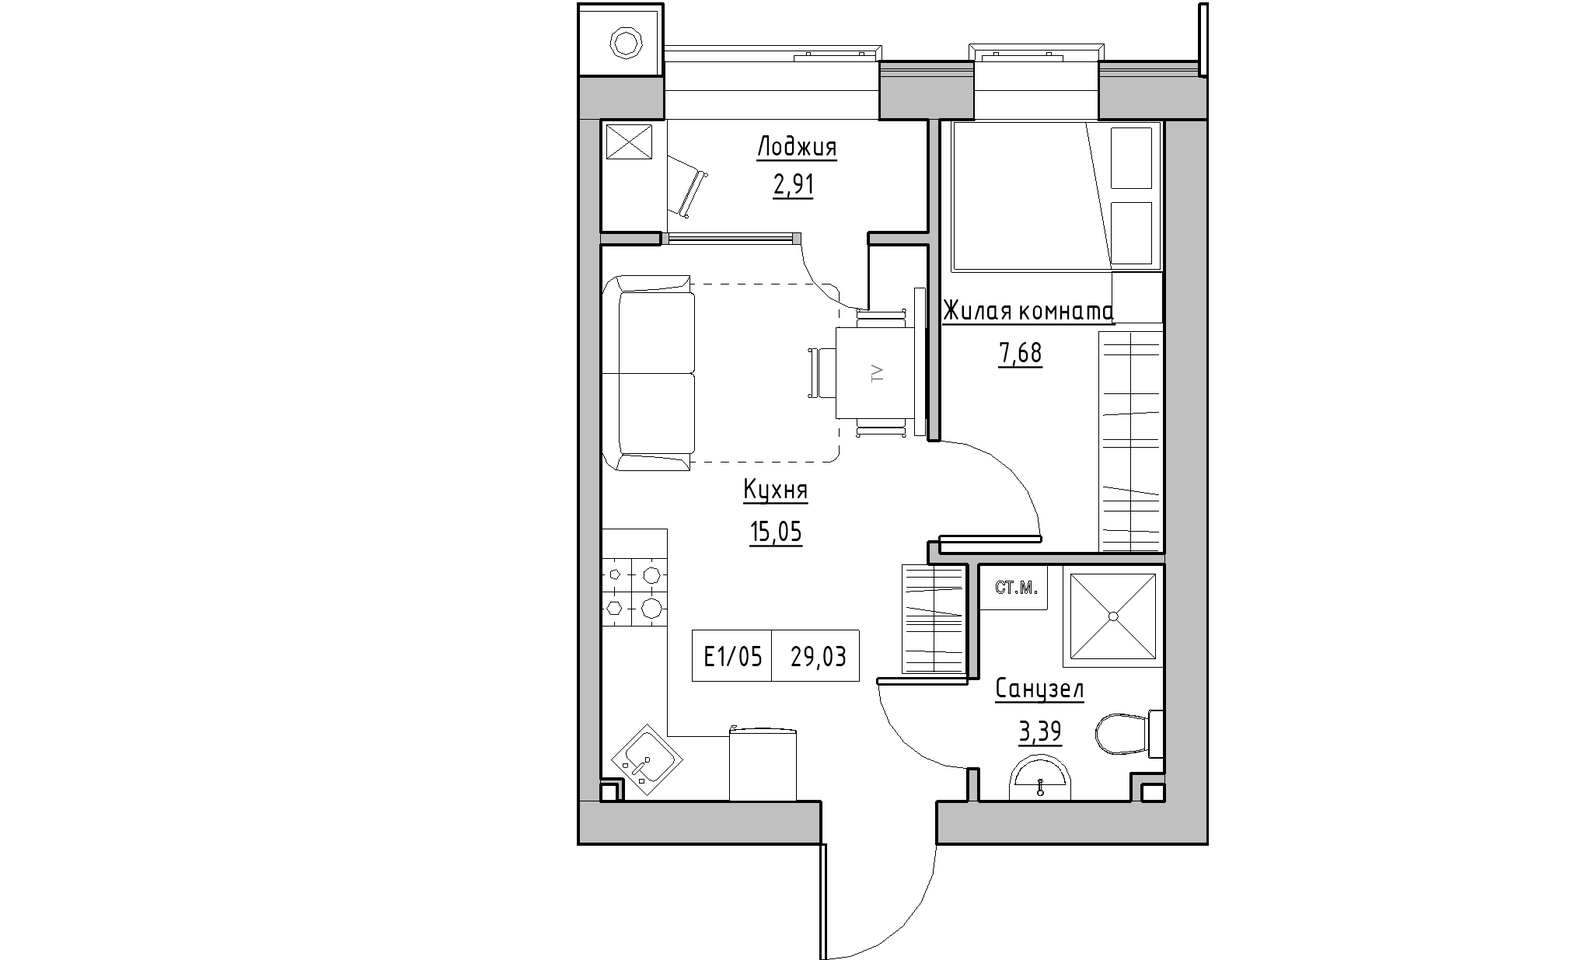 Планування 1-к квартира площею 29.03м2, KS-014-01/0007.